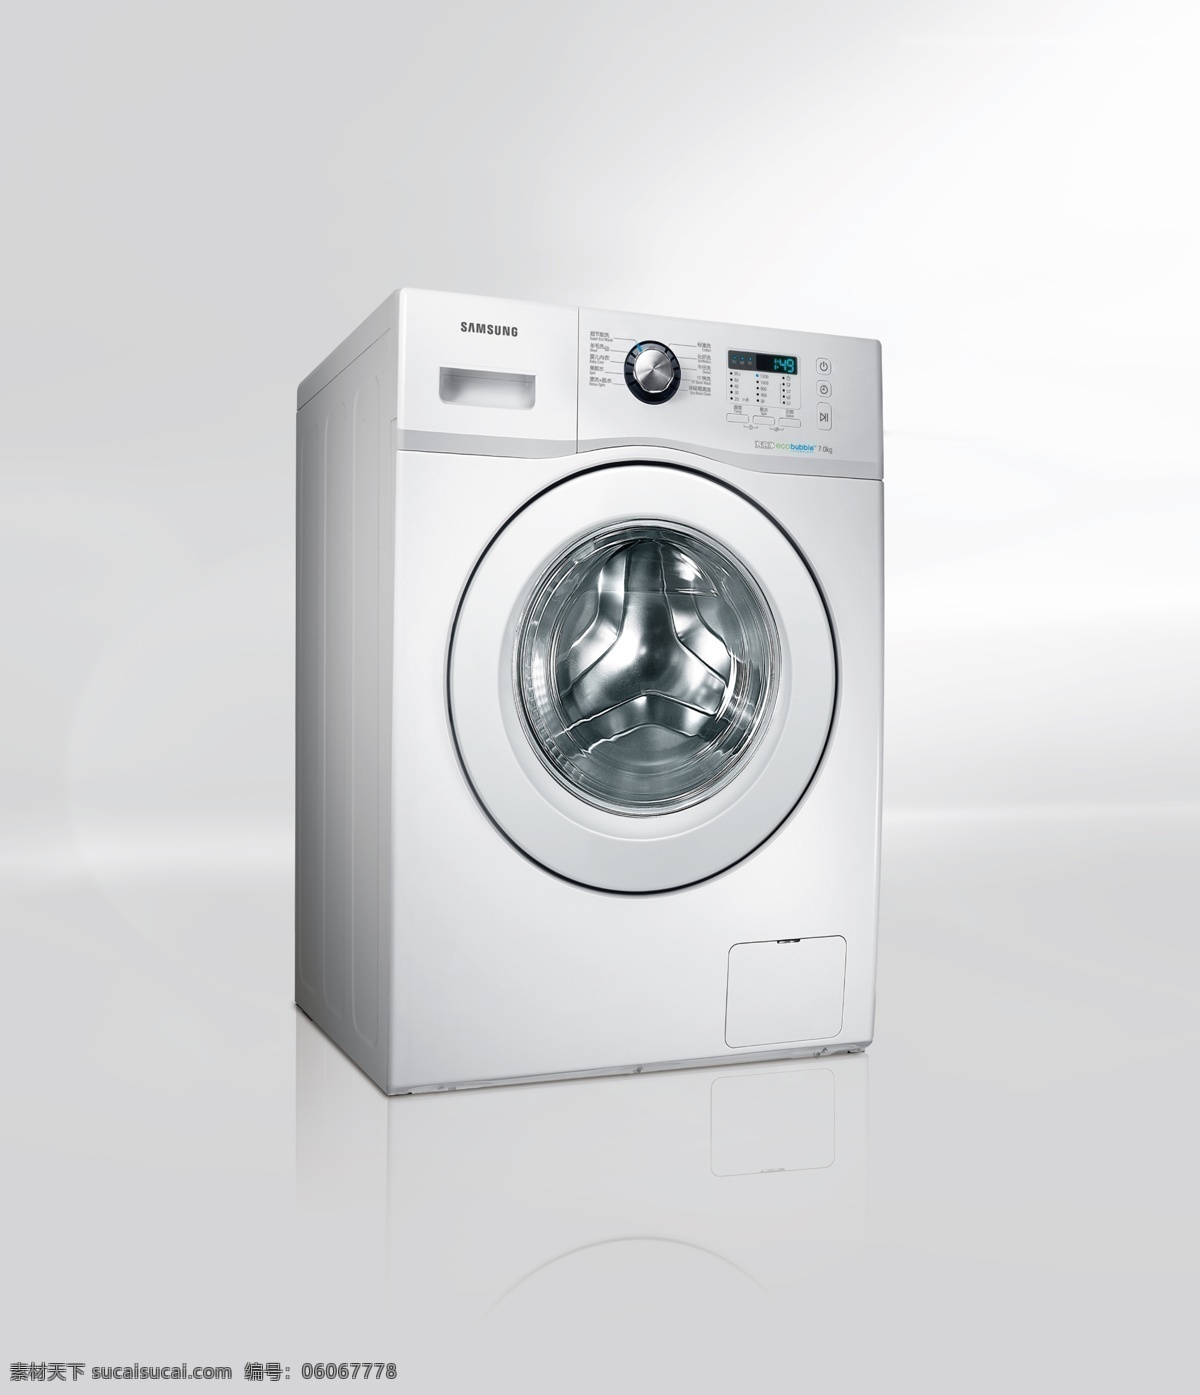 三星 高端 滚筒 洗衣机 三星洗衣机 高端洗衣机 滚筒洗衣机 psd素材 招贴设计